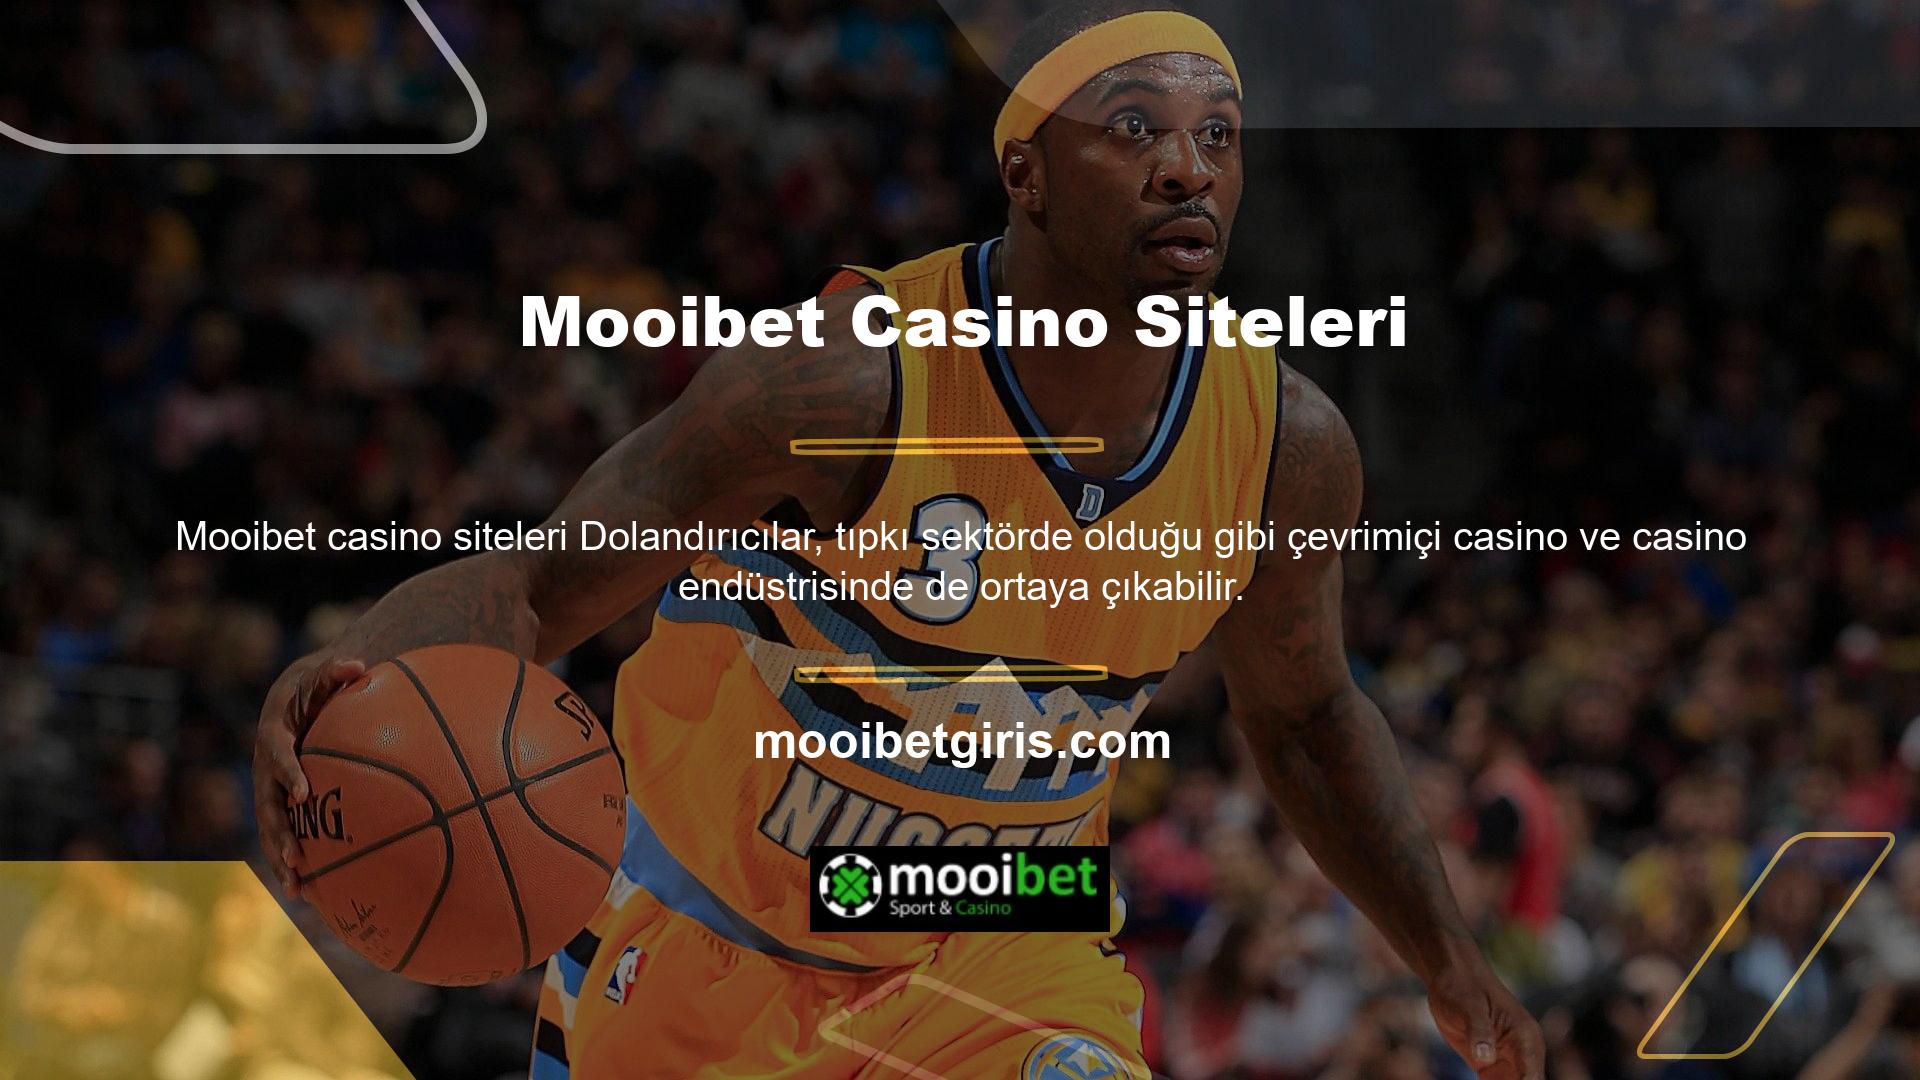 Mooibet casino siteleri